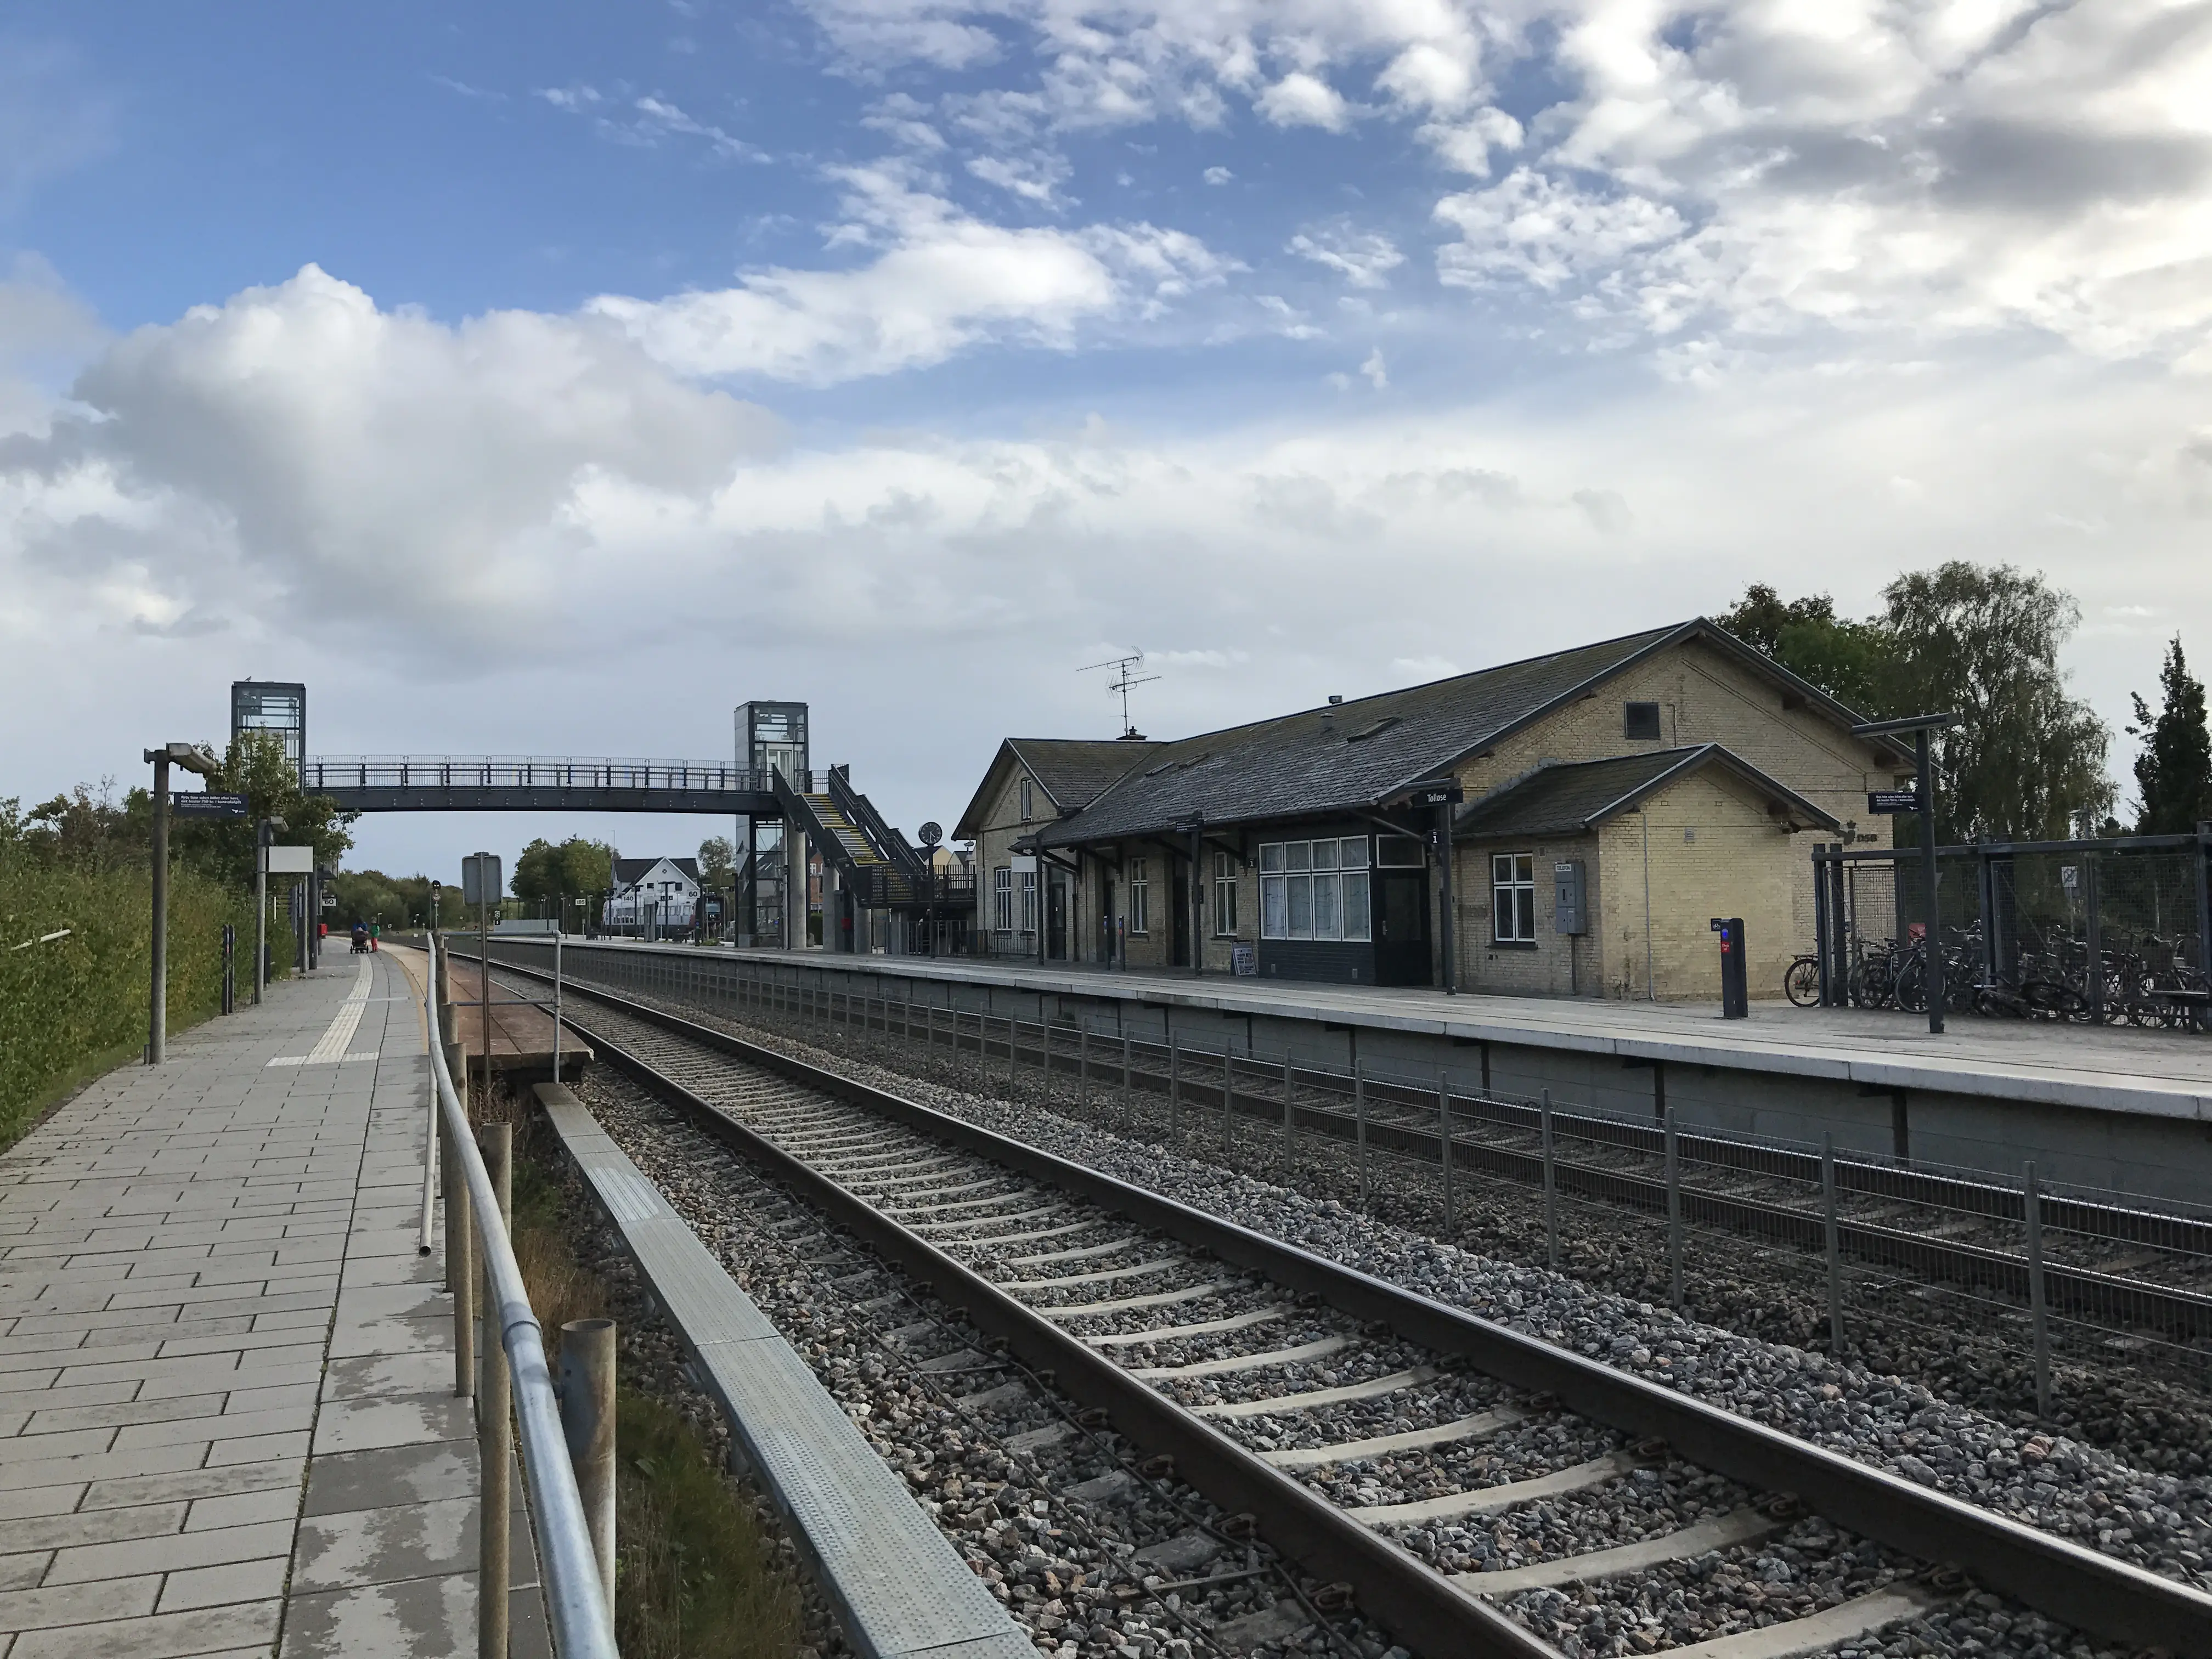 Billede af Tølløse Station.